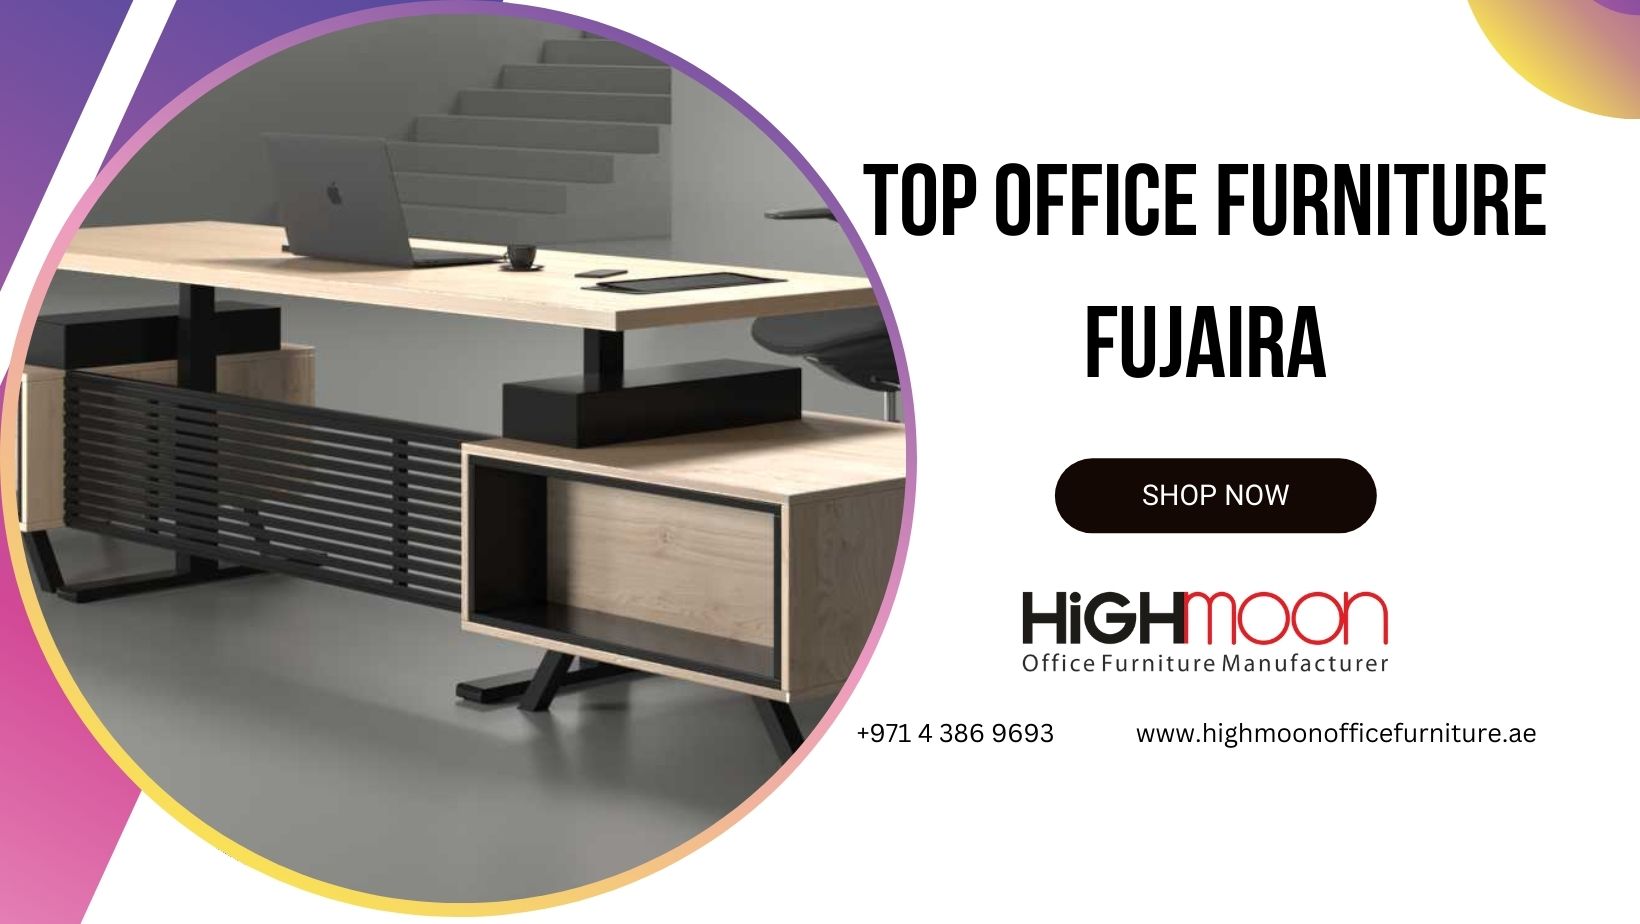 Top Office Furniture Fujairah